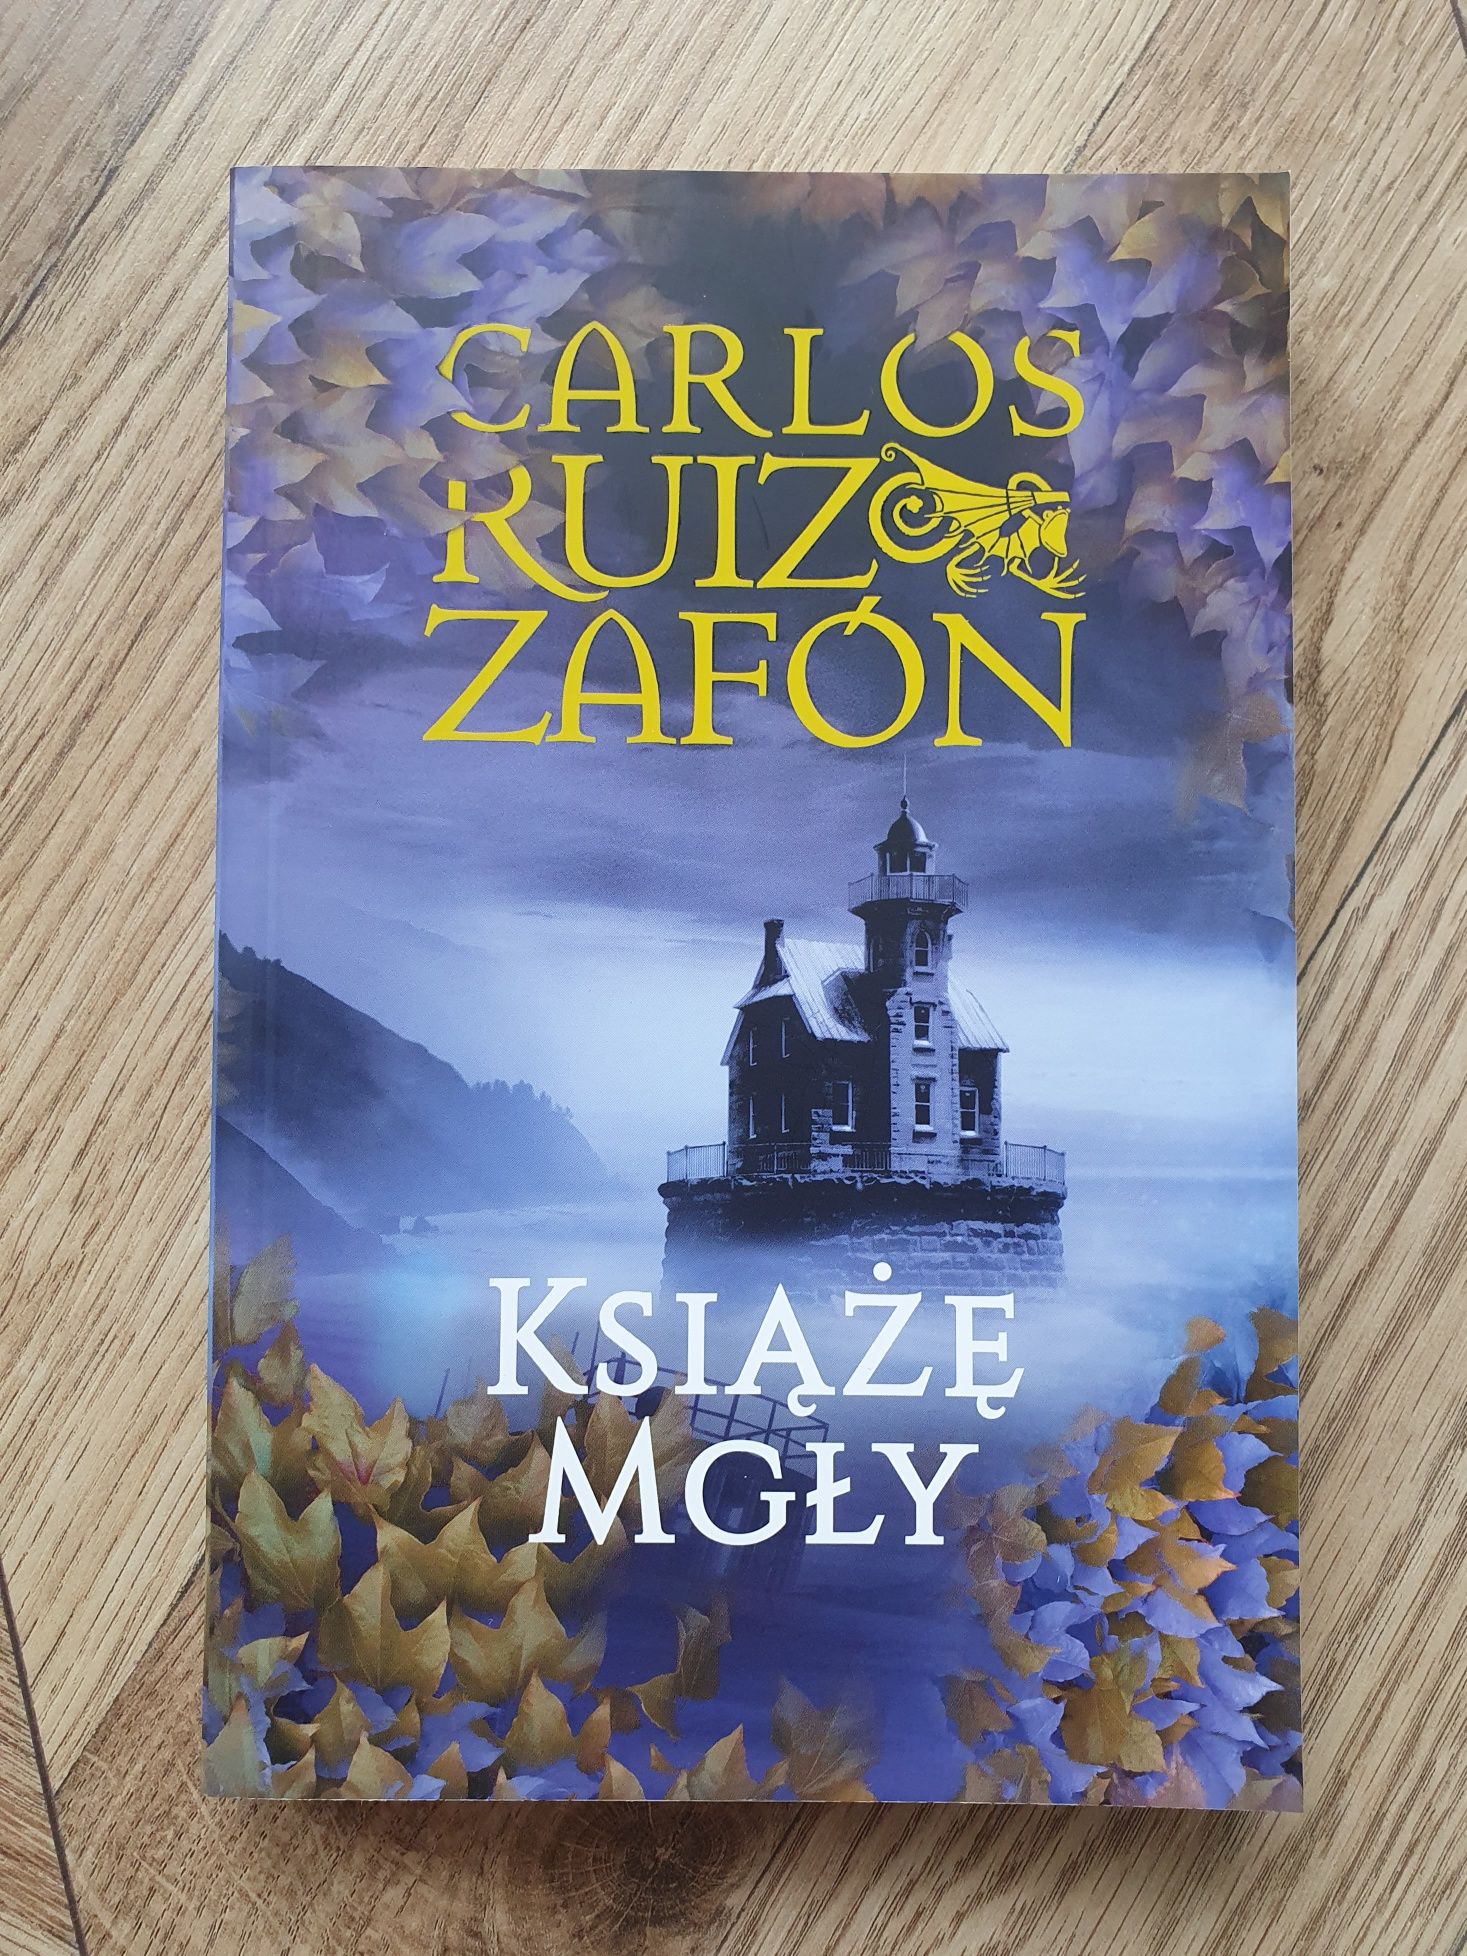 Książka Carlos Ruiz Zafon "Książę Mgły". Powieść. Nowa